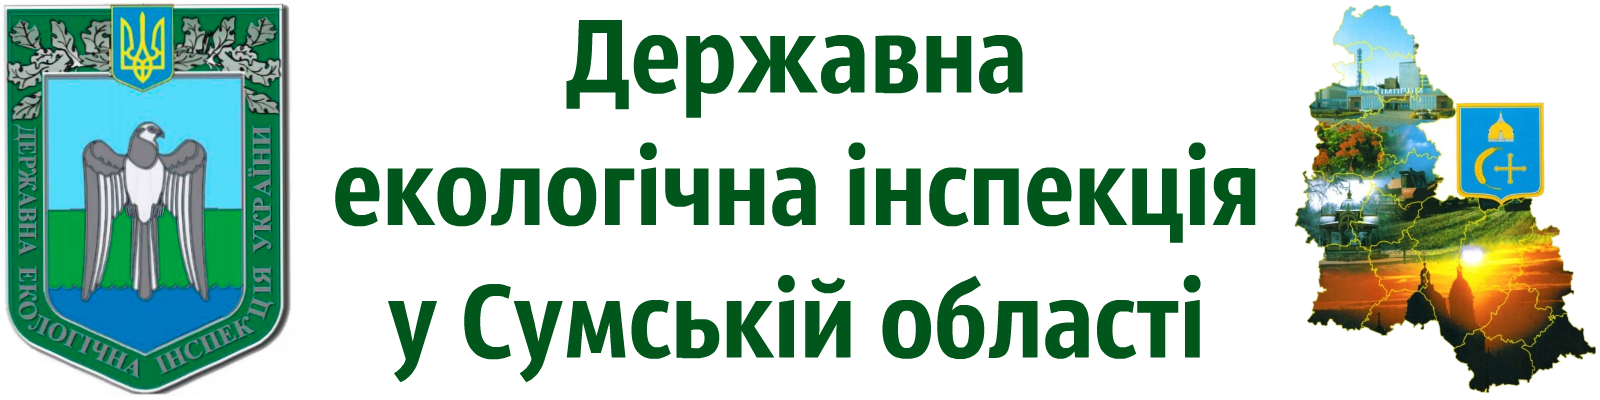 Державна екологічна інспекція у Сумській області